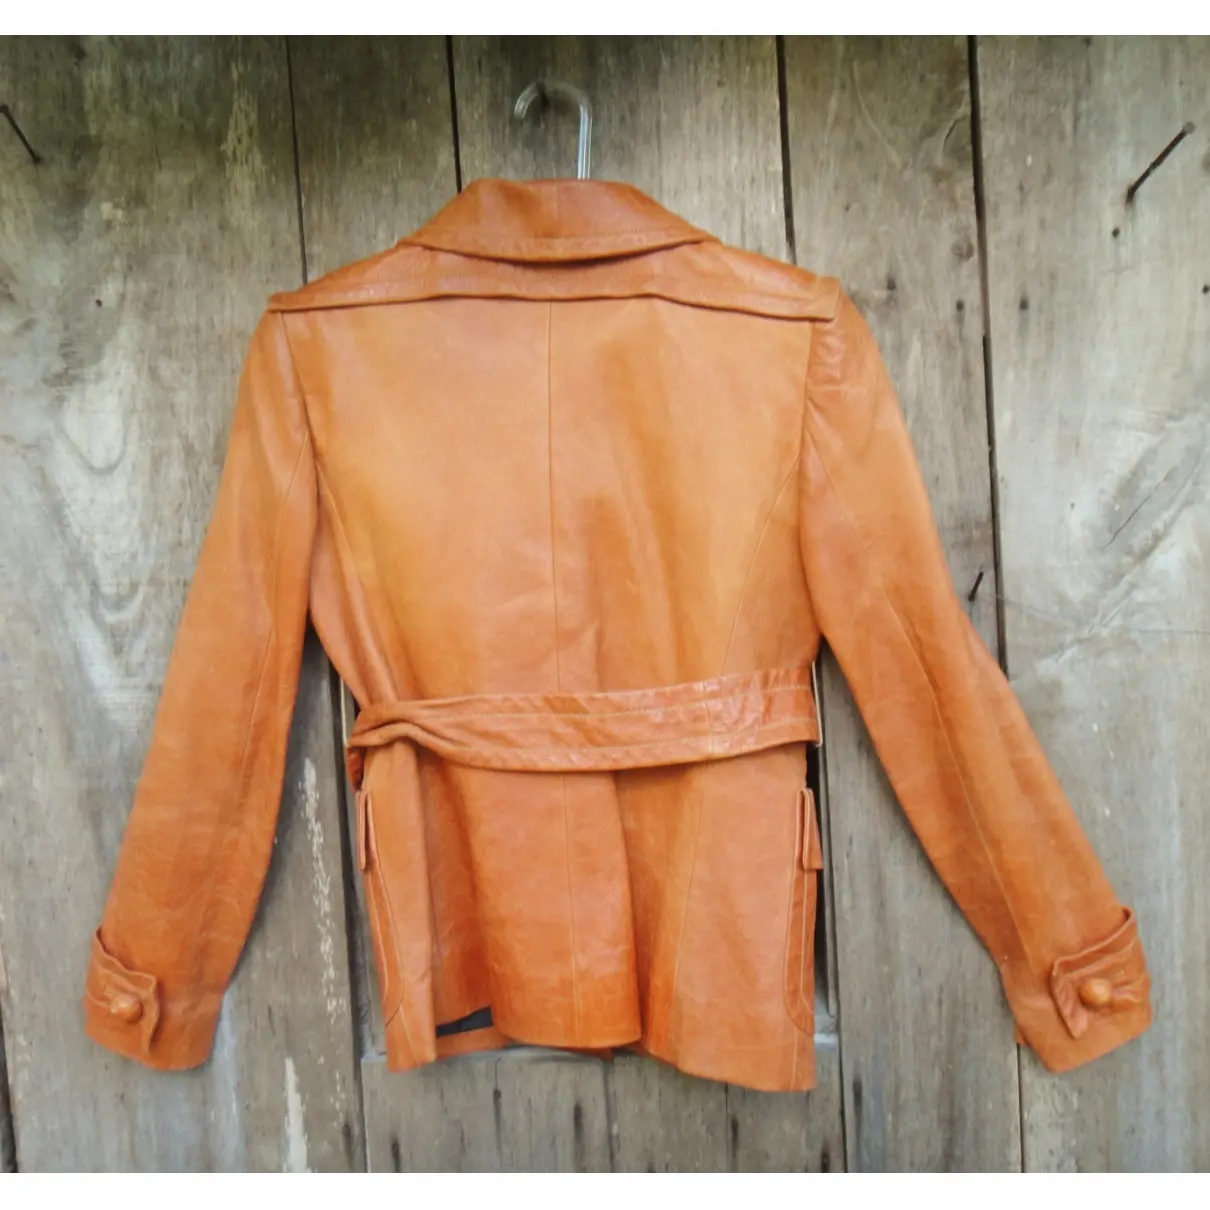 Buy Givenchy Leather short vest online - Vintage